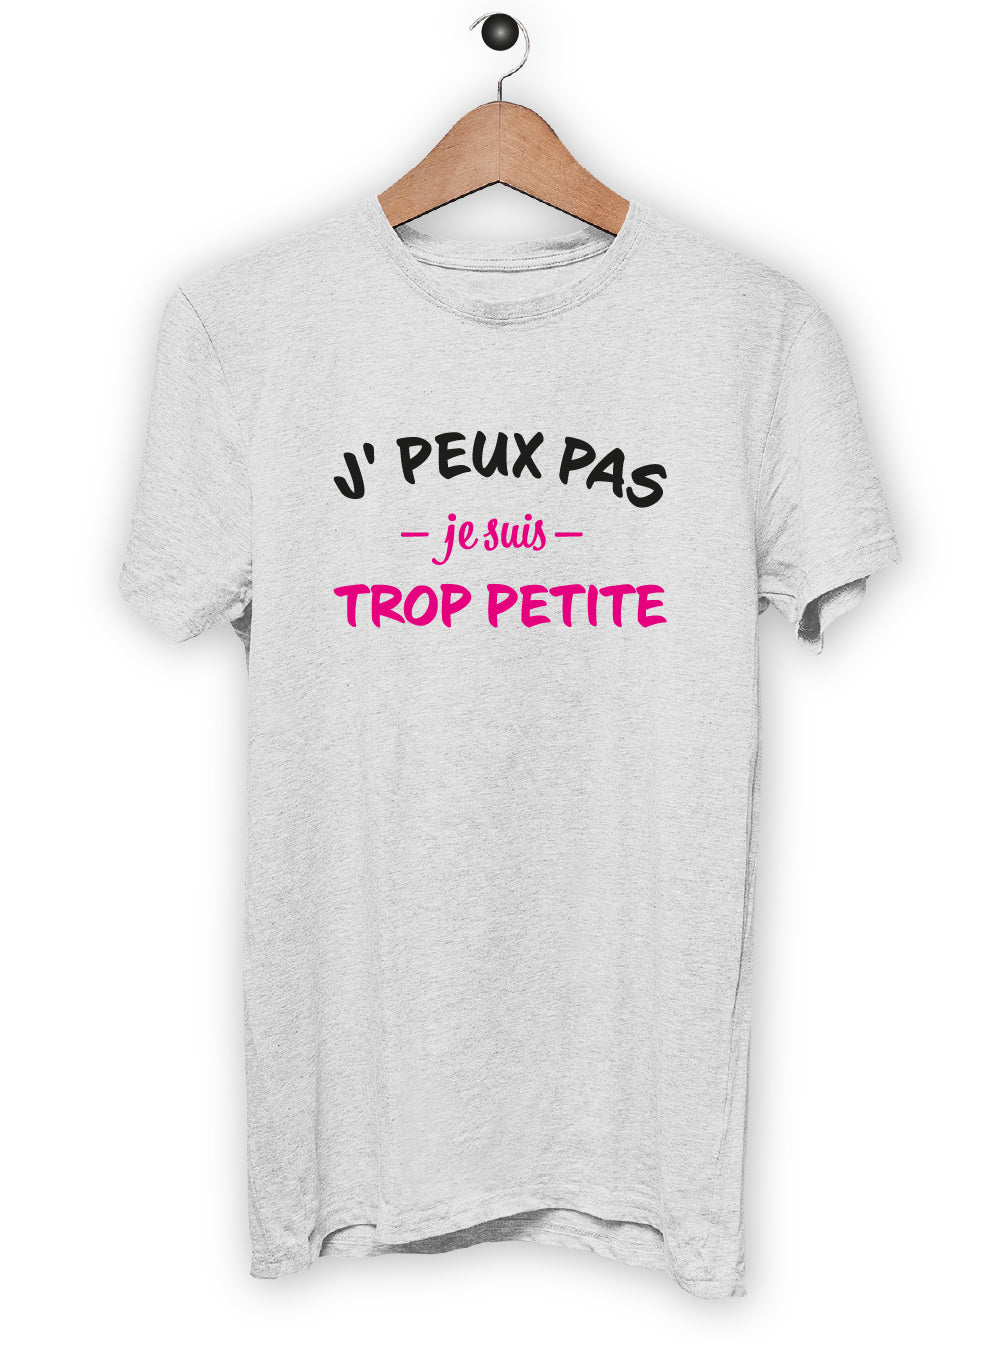 T-Shirt "J'PEUX PAS JE SUIS TROP PETITE"